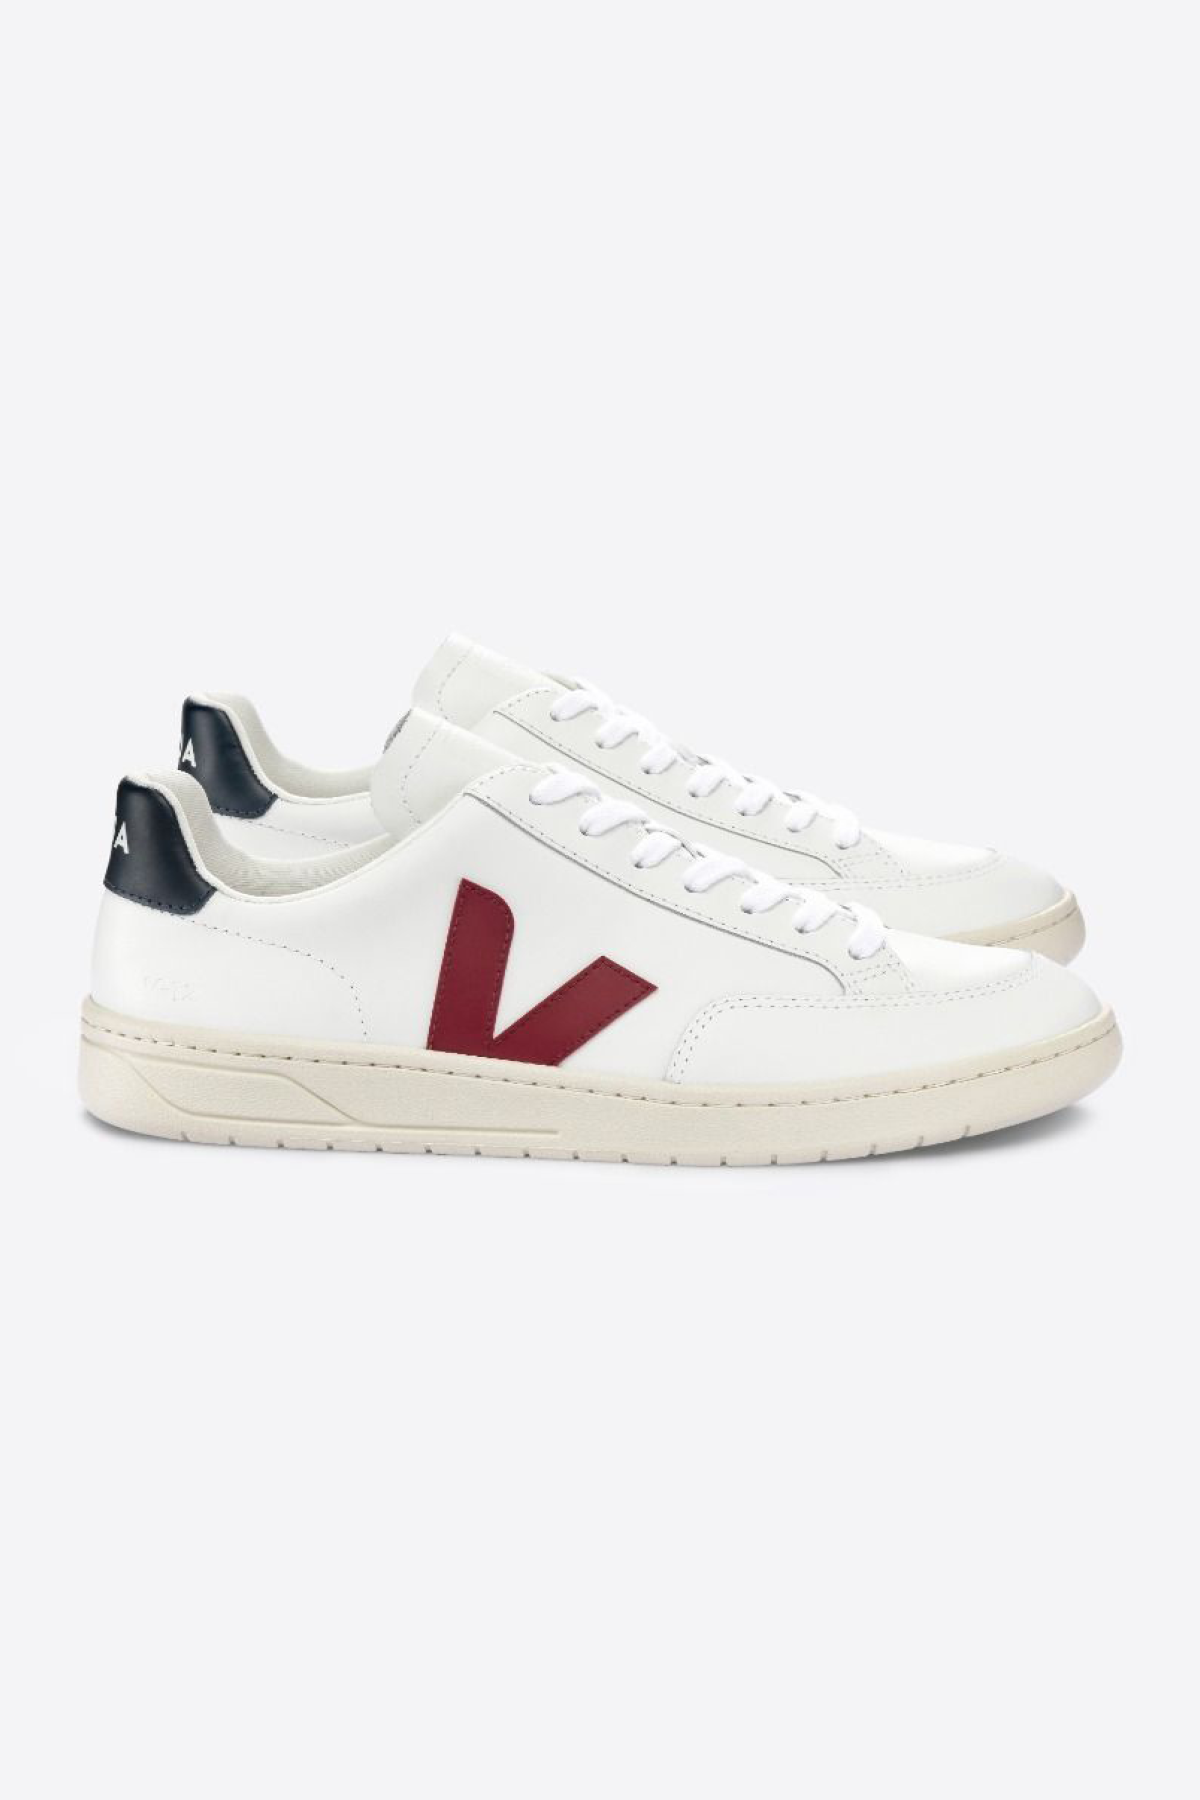 Veja Womens V-12 Leather Sneakers - White/Marsala/Navy